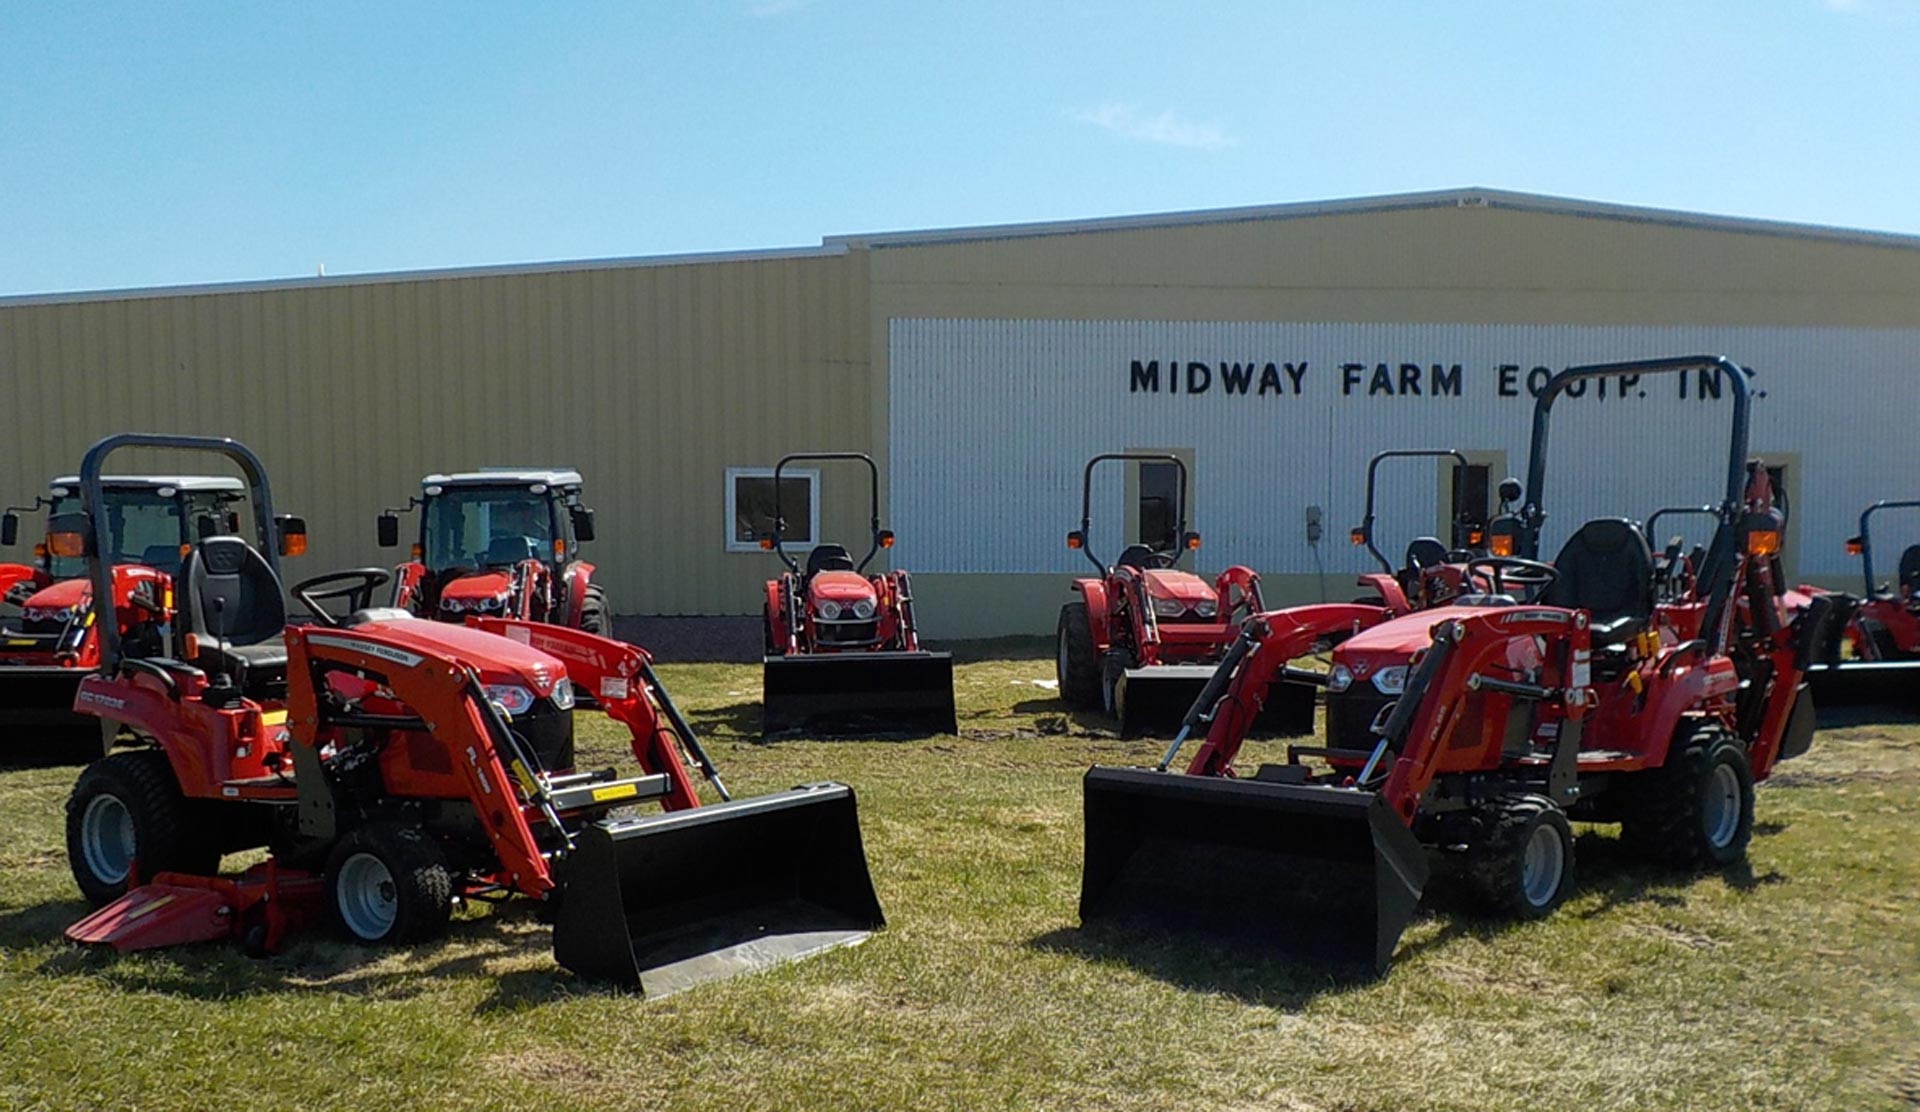 Midway Farm Equipment tractors